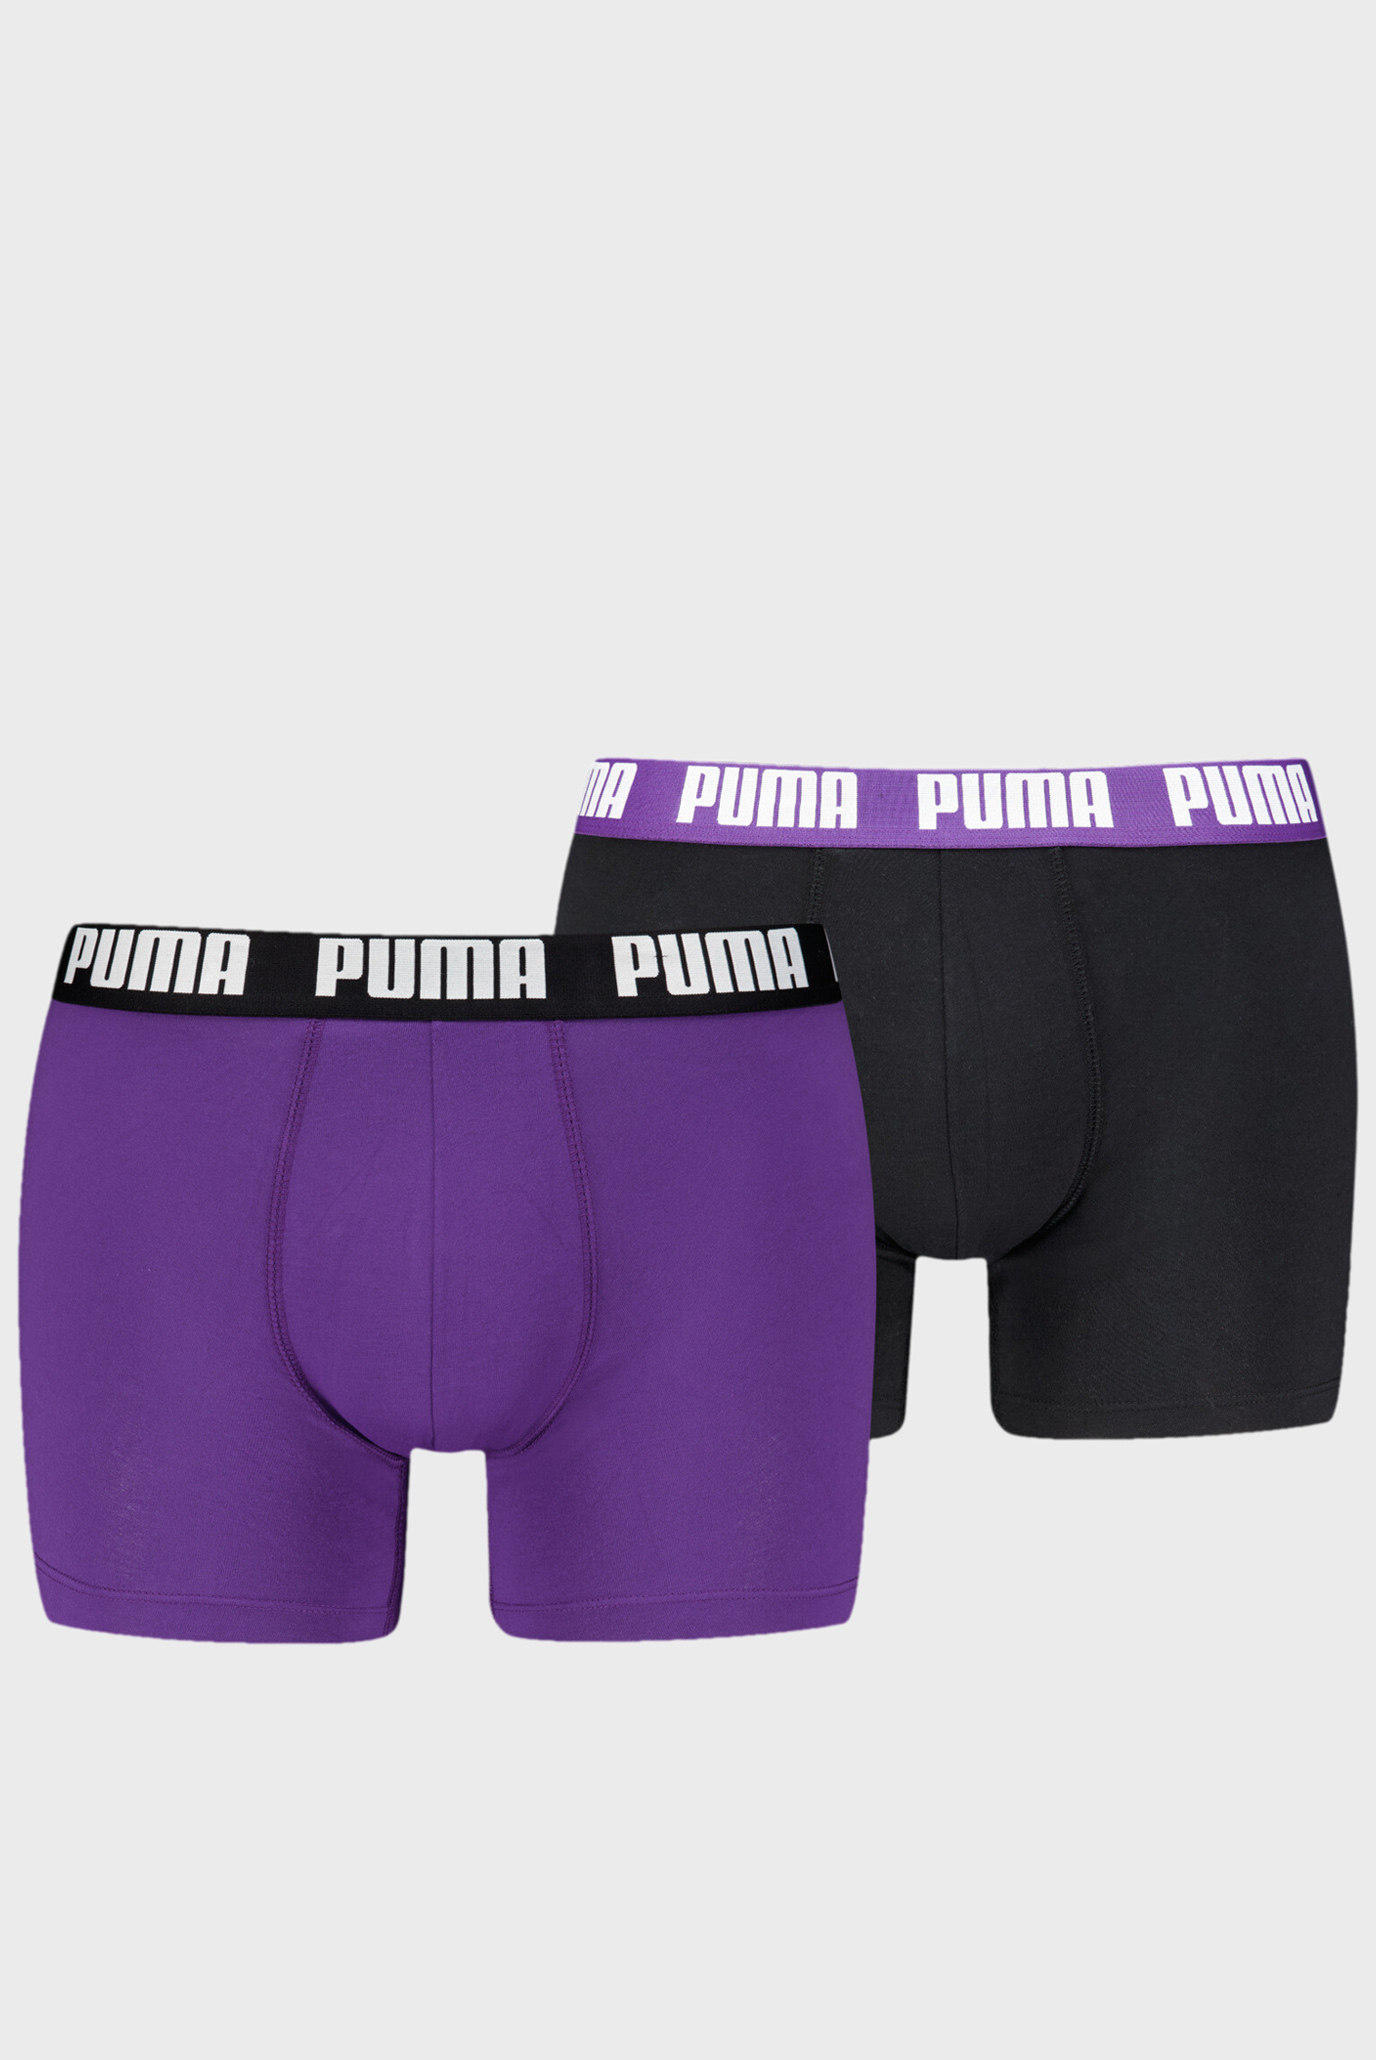 Мужское боксеры (2 шт)  PUMA Men's Boxer Briefs 1